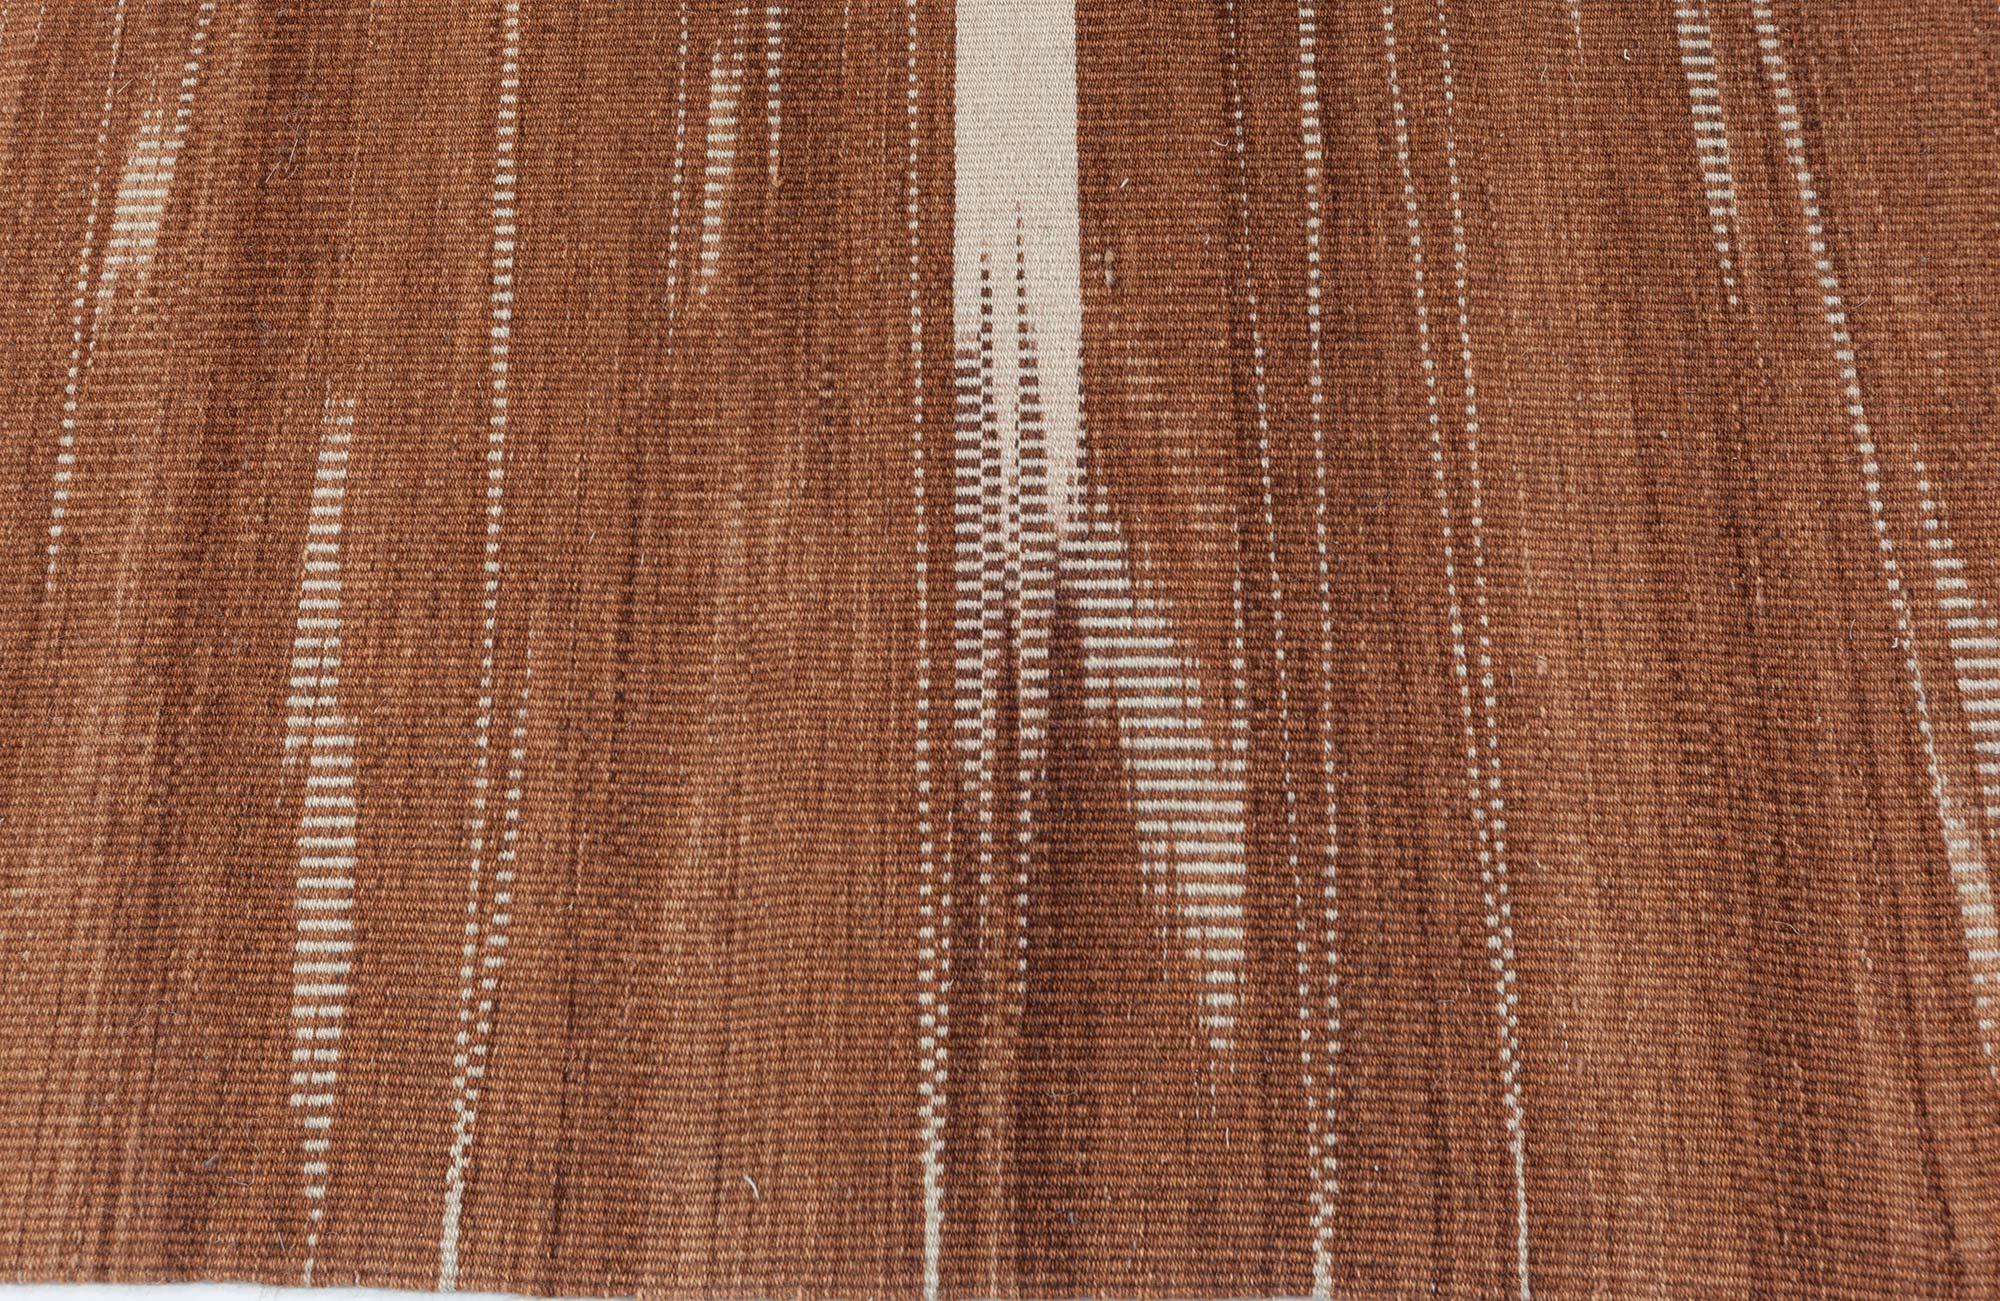 Honaz, Turkish Modern Kilim rug by Doris Leslie Blau.
Size: 10'2